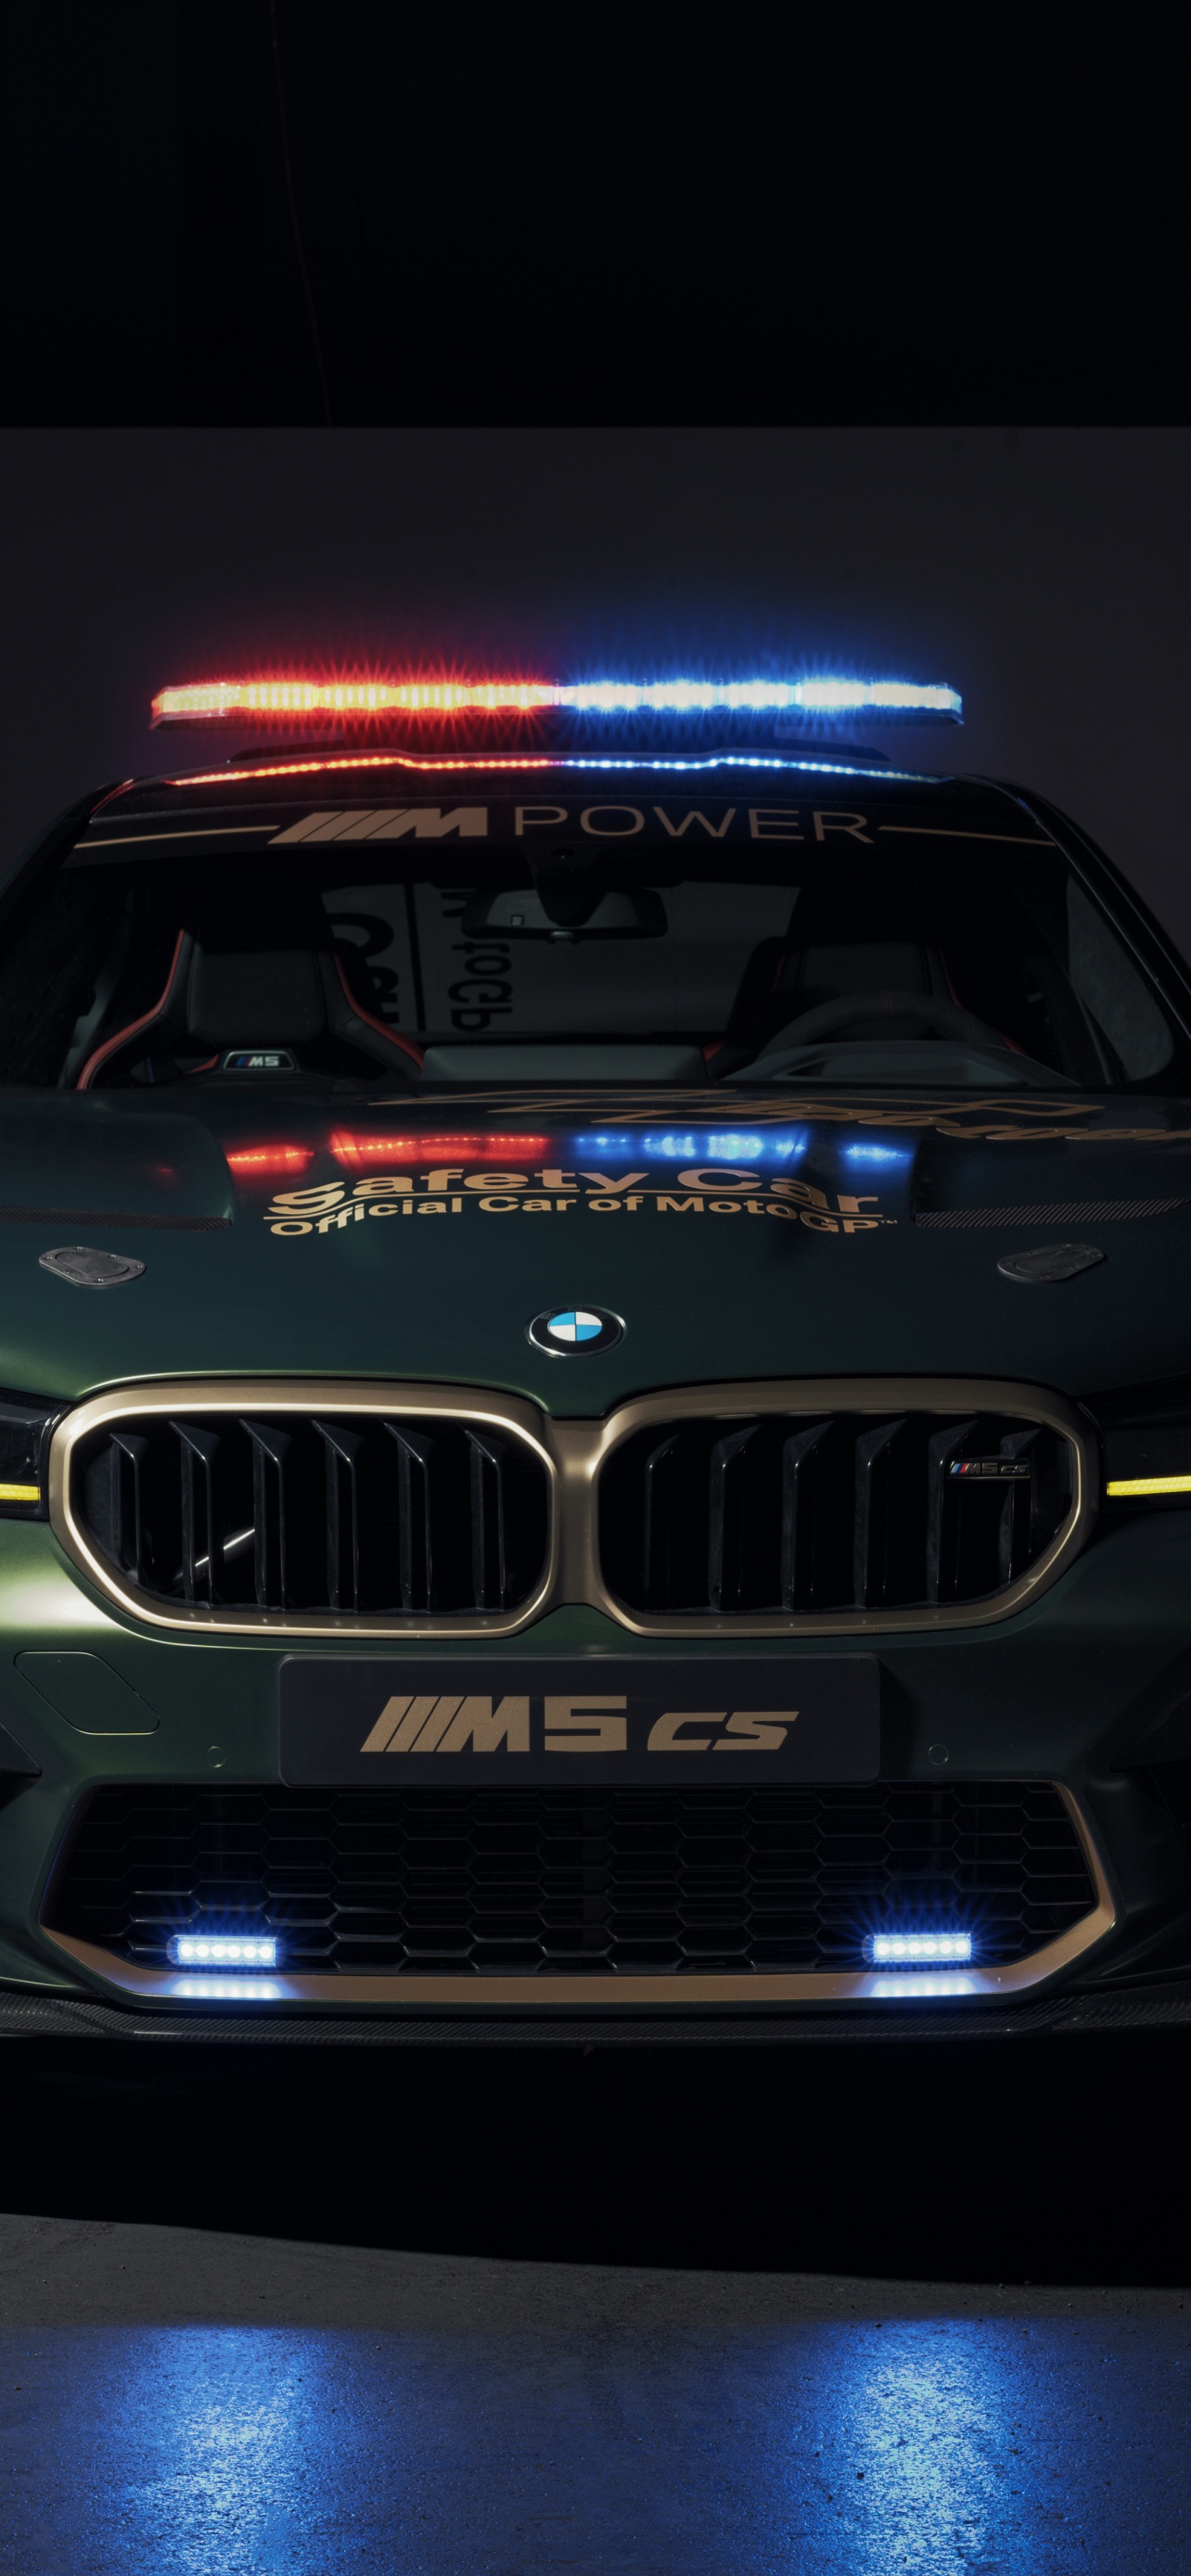 53+] BMW M5 HD Wallpapers - WallpaperSafari